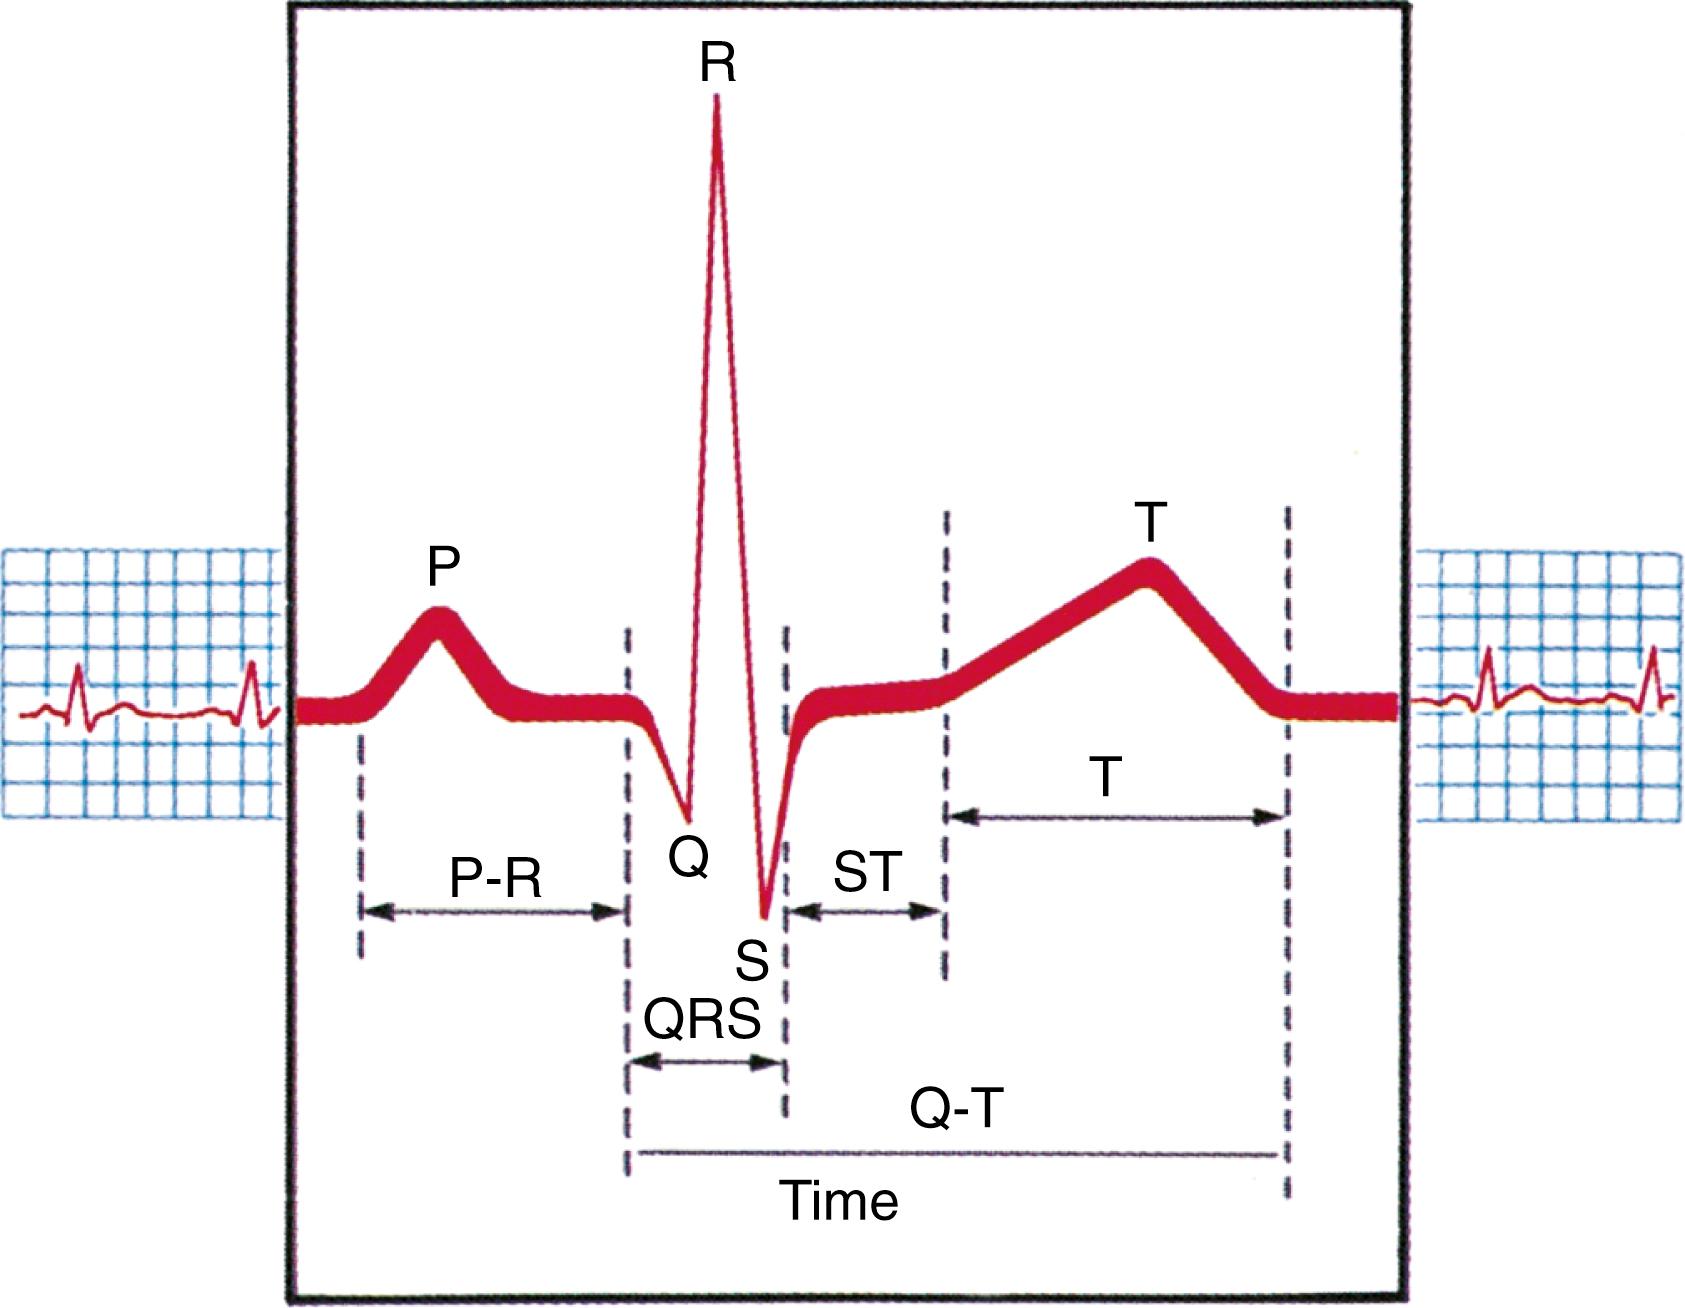 FIG. 15.9, Usual electrocardiogram waveform.